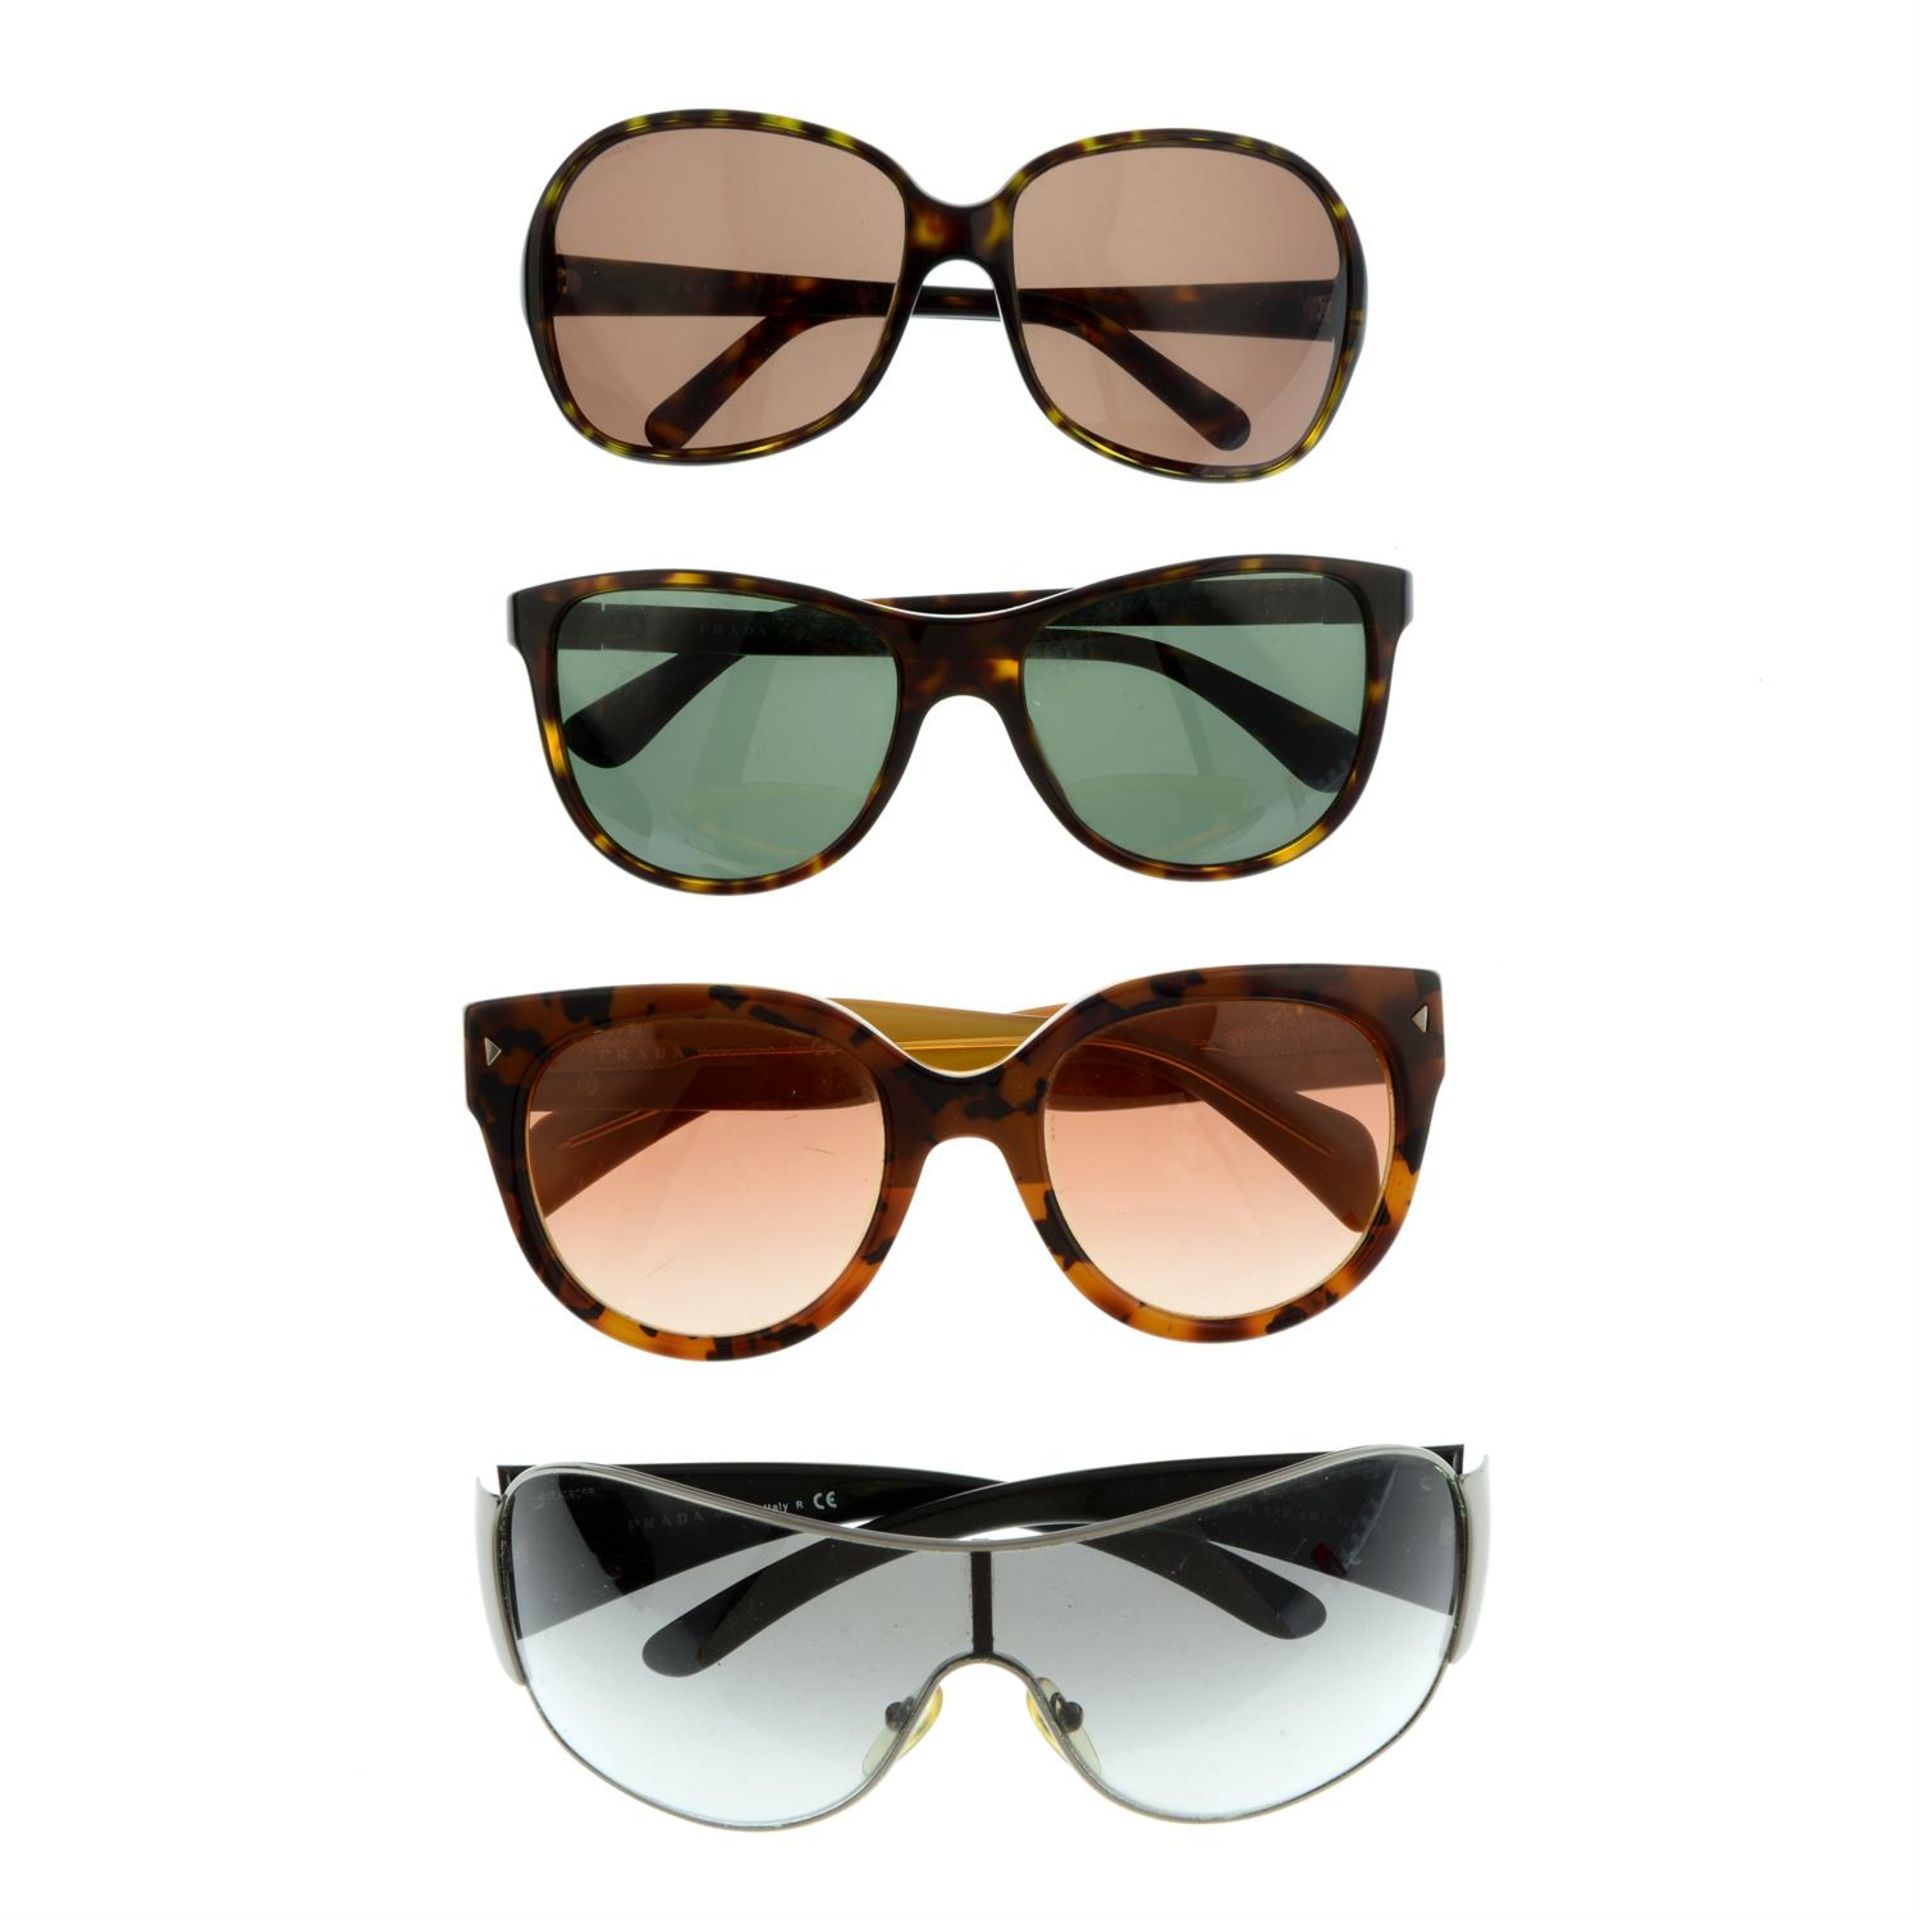 PRADA - four pairs of sunglasses.